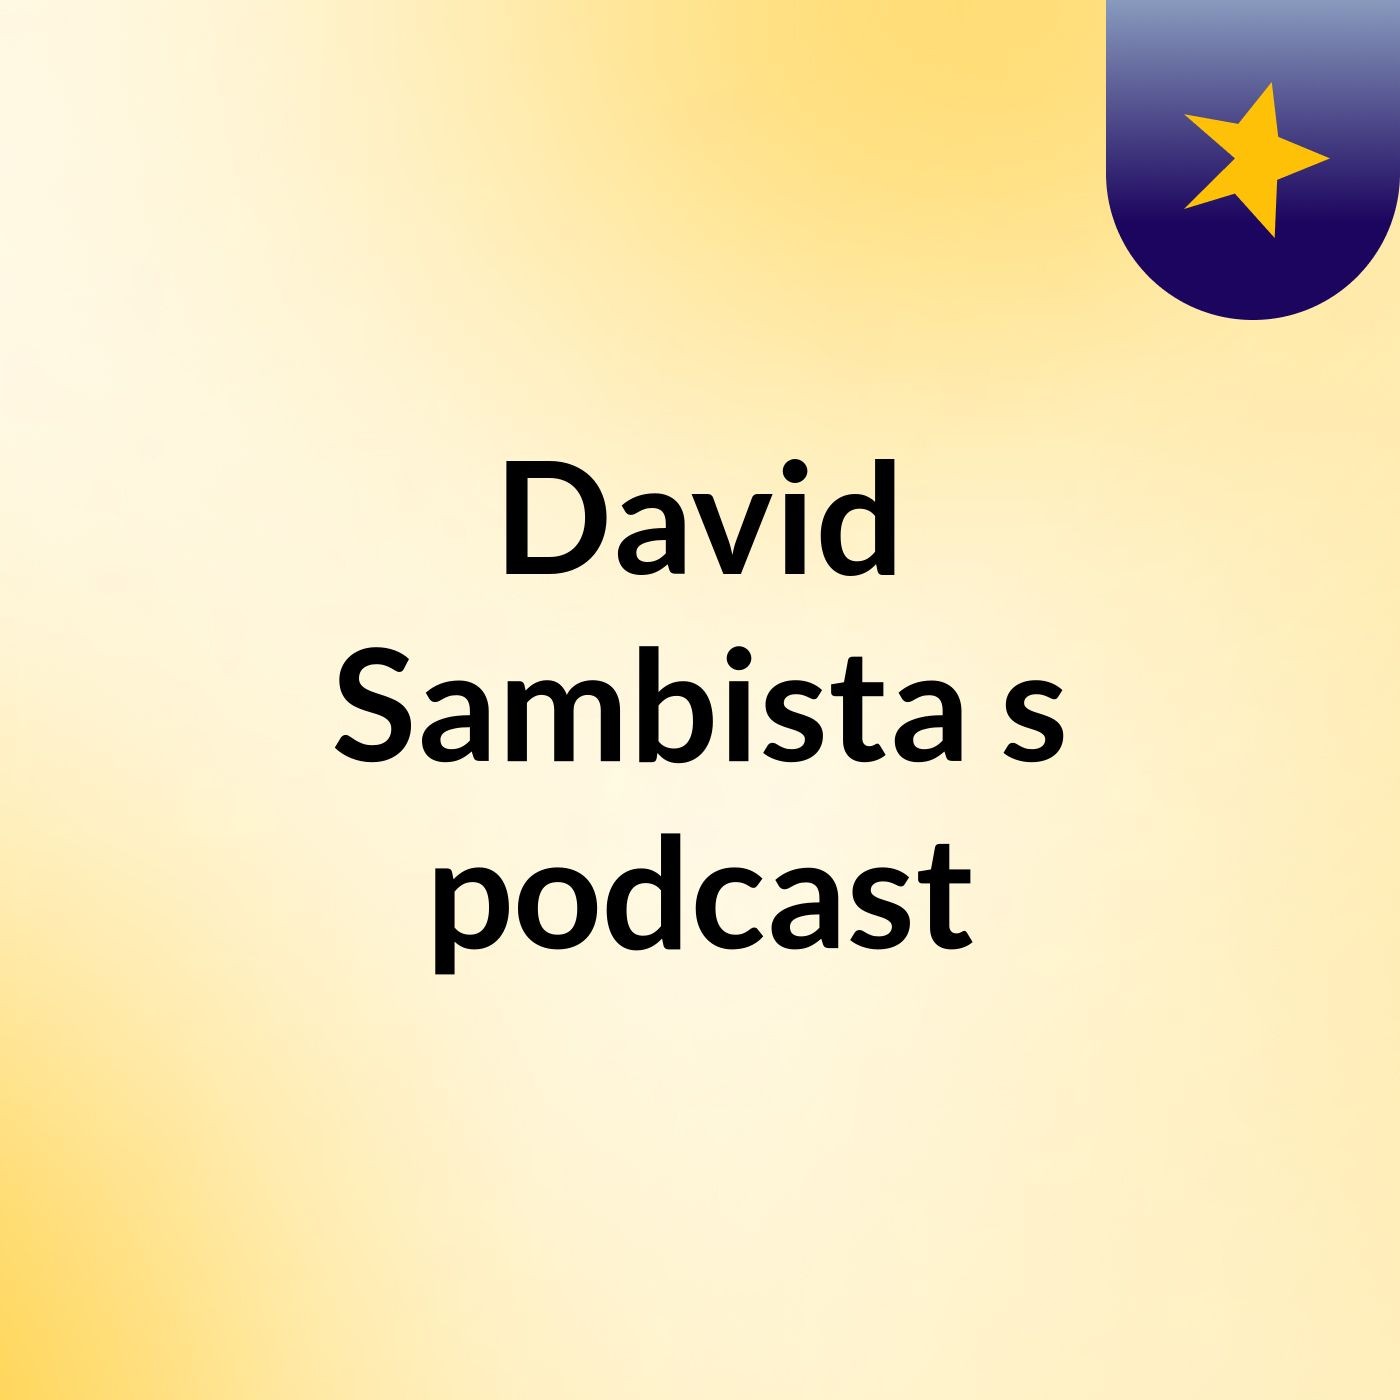 David Sambista's podcast